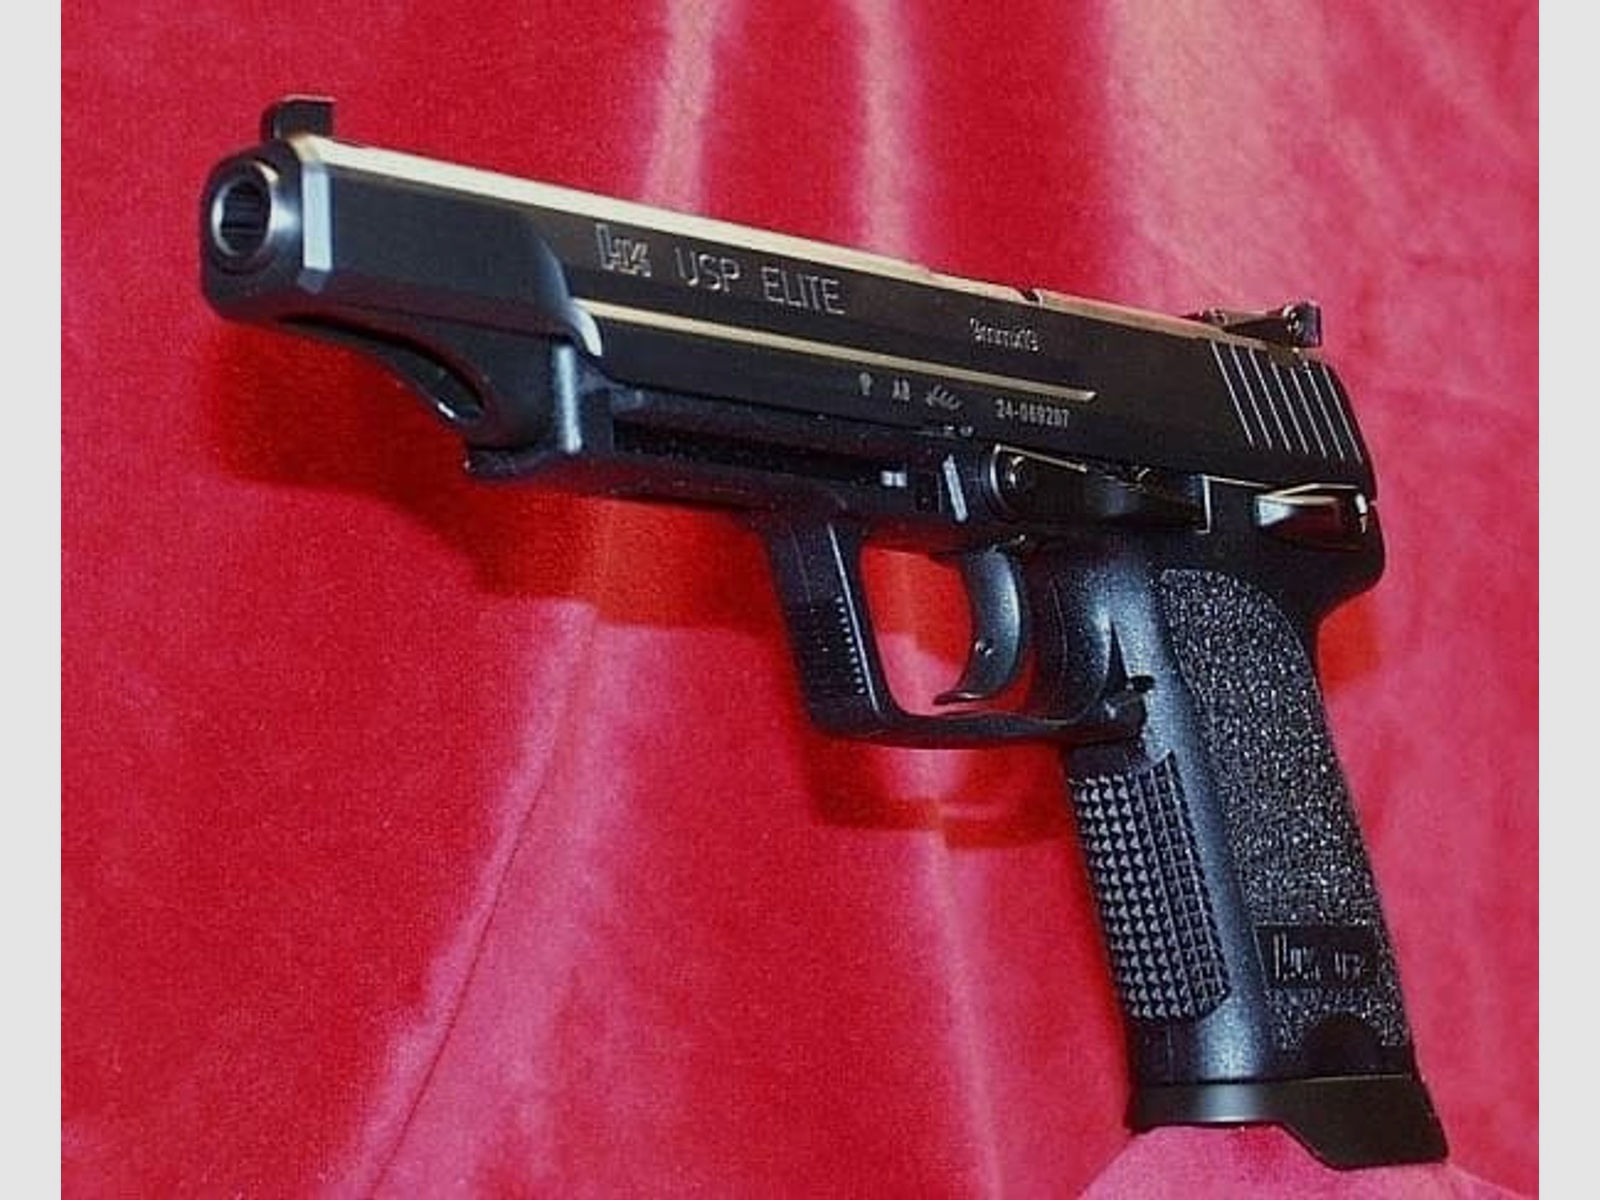 HECKLER & KOCH Pistole Mod. USP Elite -6' 9mmLuger